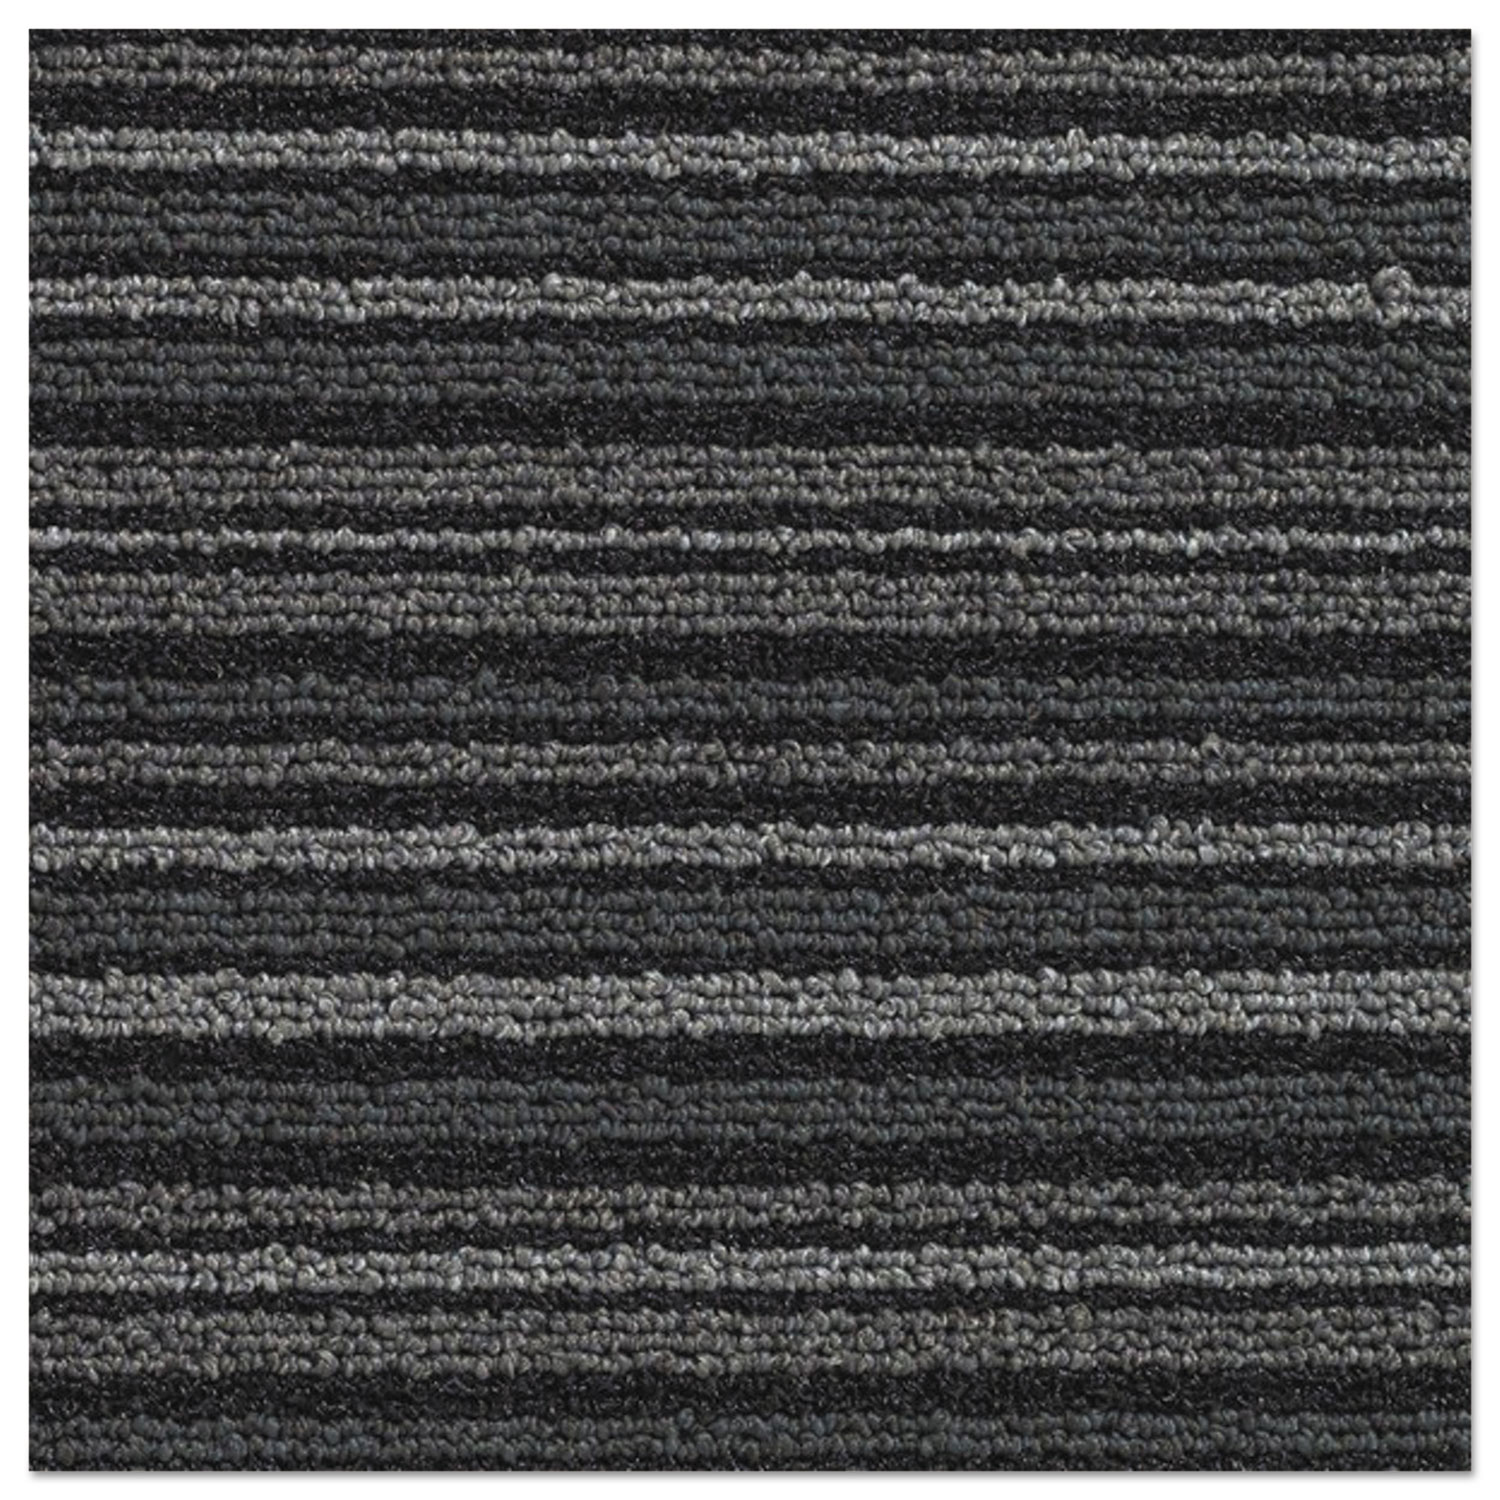 Nomad 7000 Heavy Traffic Carpet Matting, Nylon/Polypropylene, 48 x 72, Gray